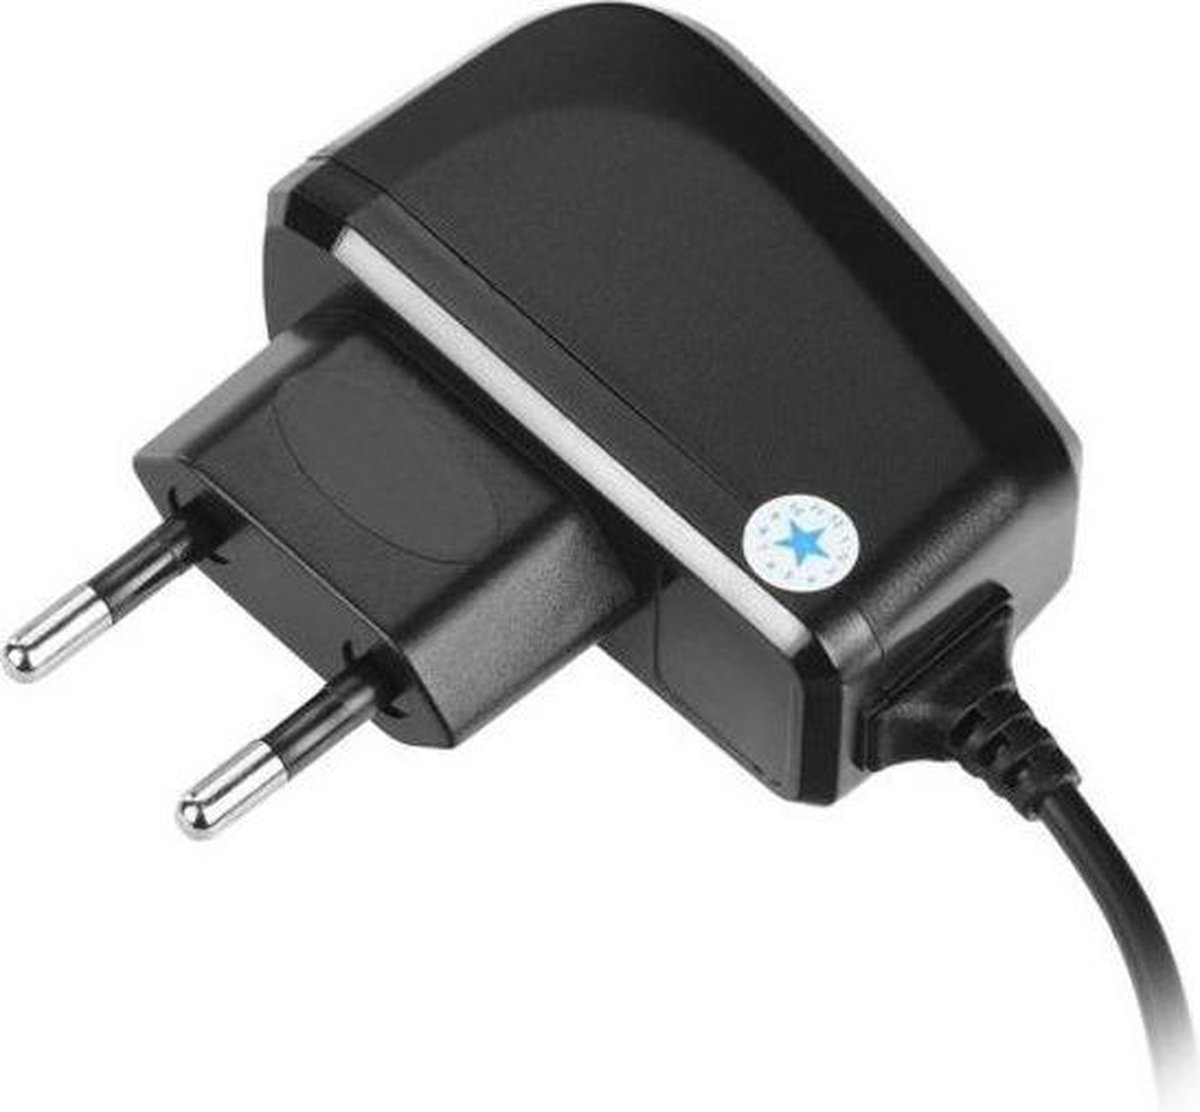 Oplader voor Kobo e-readers - Micro-USB aansluiting | bol.com